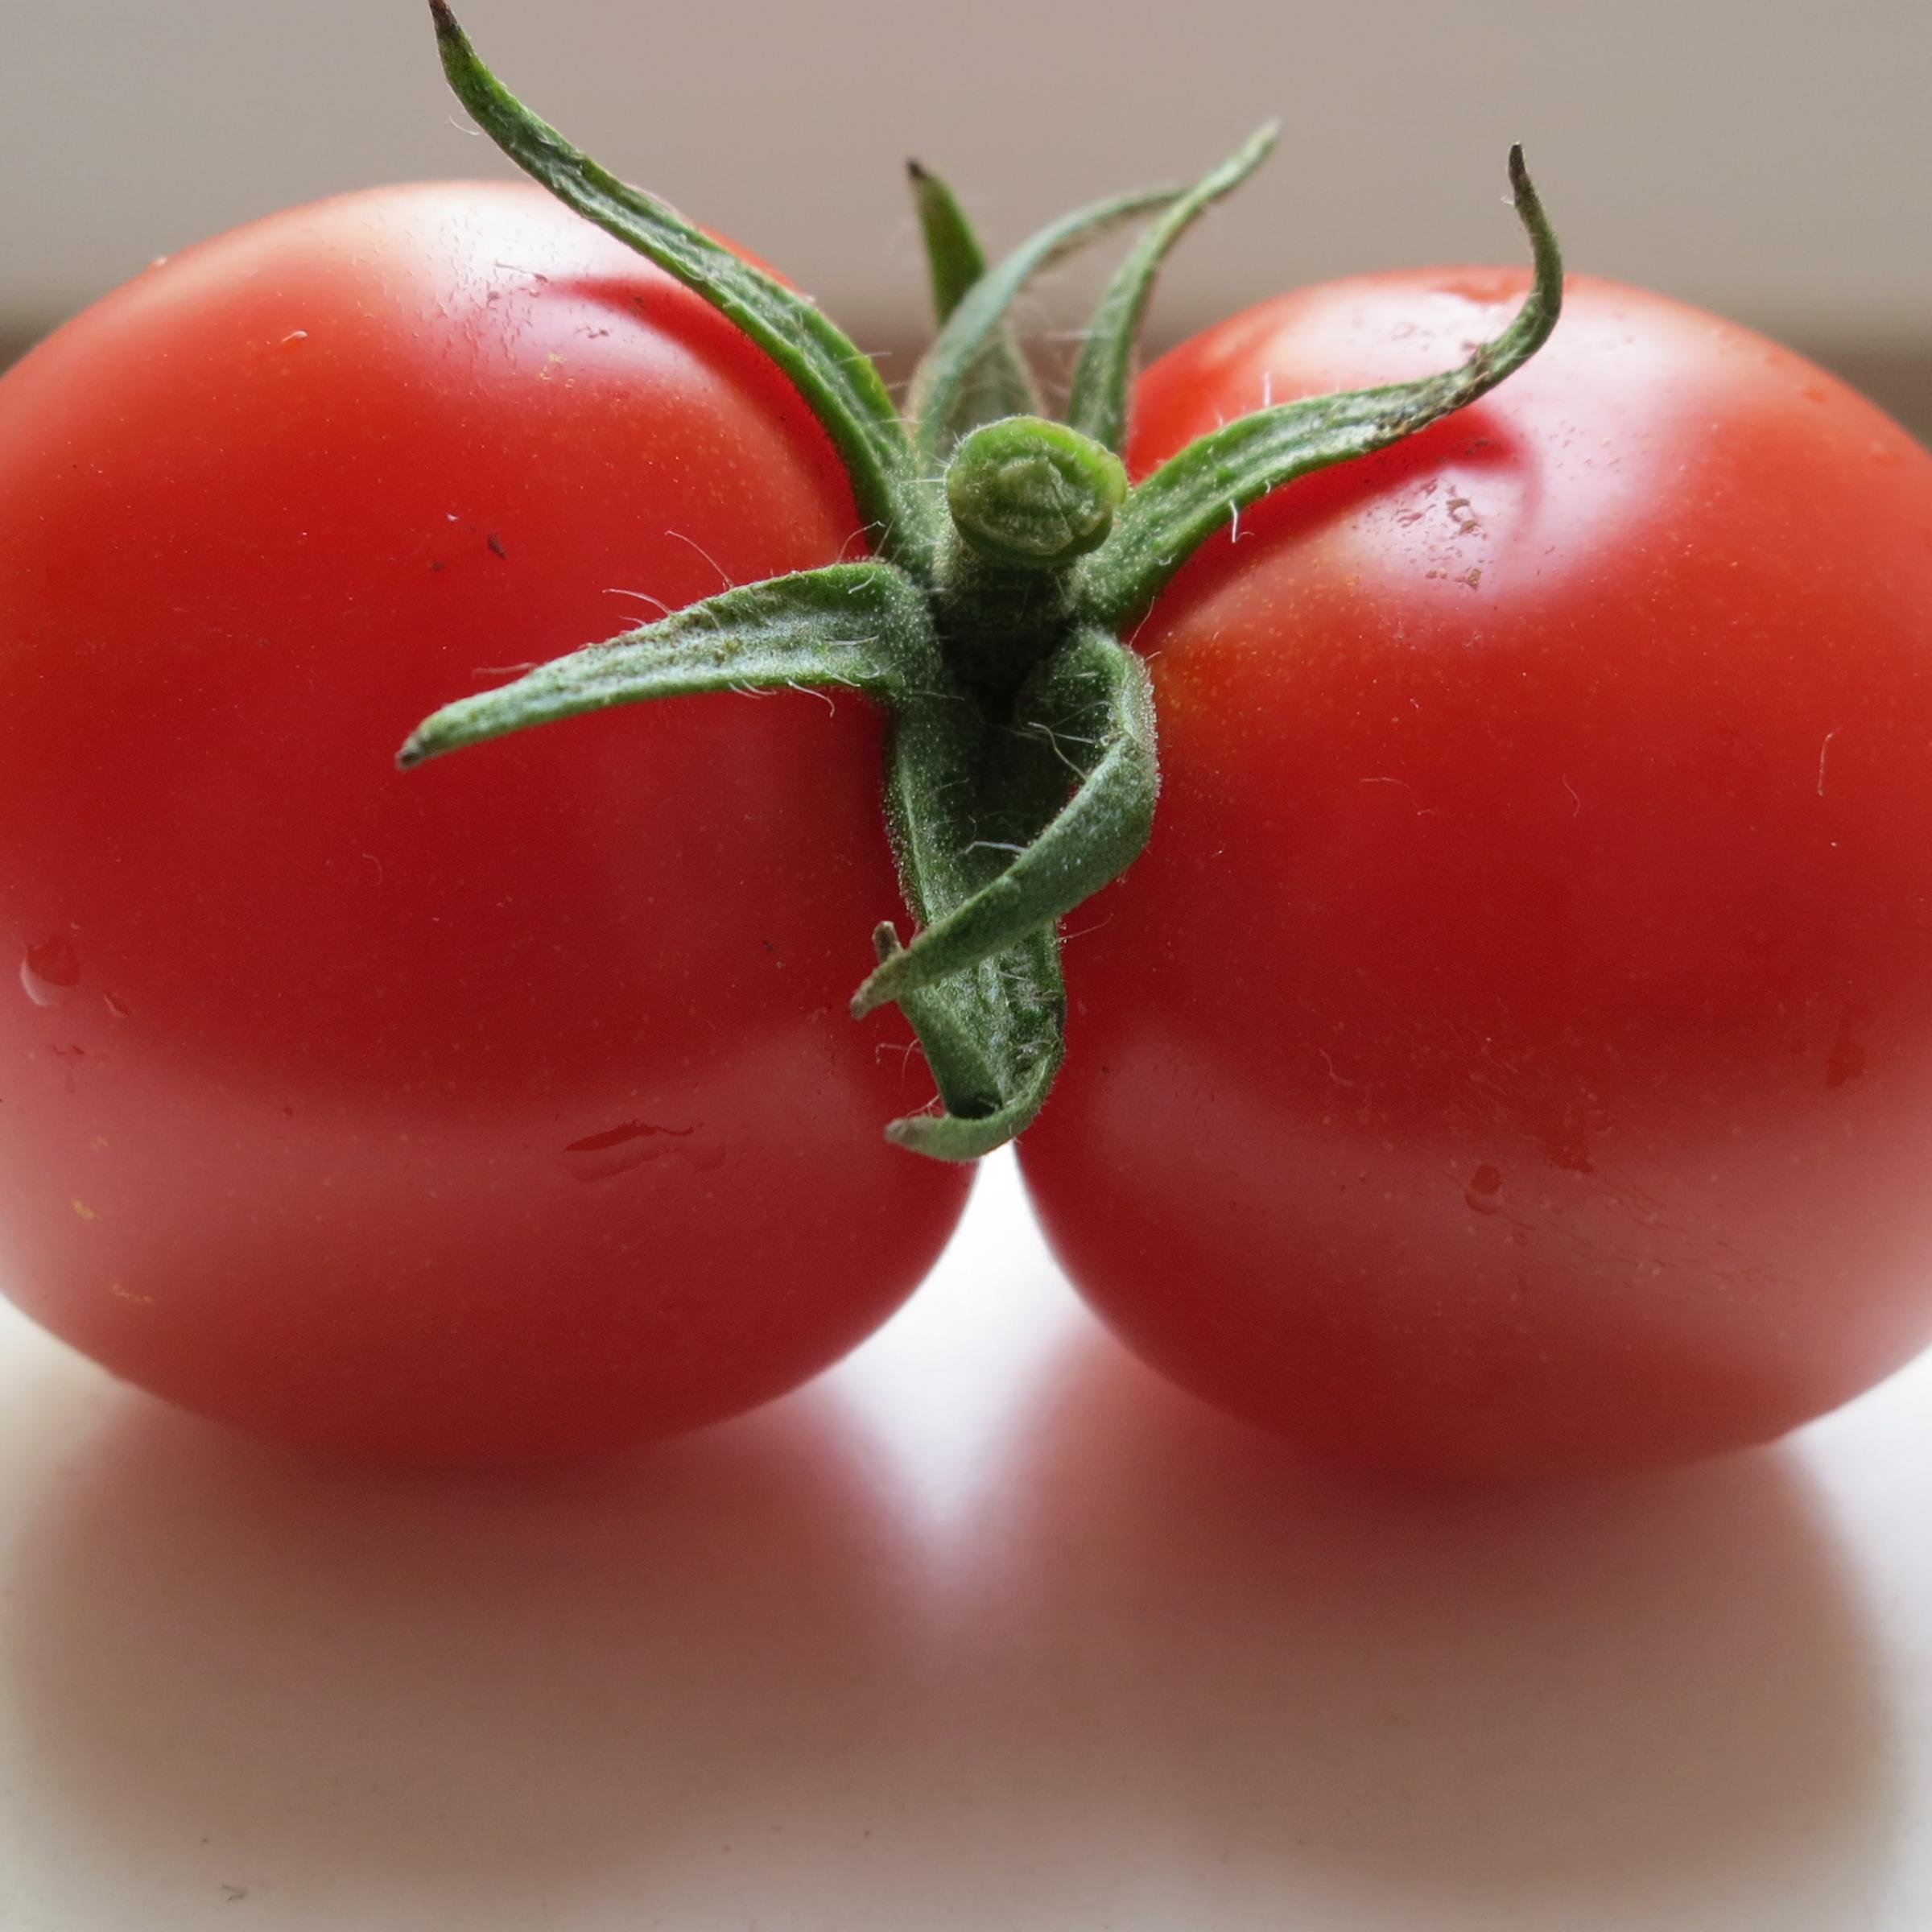 Eine rote Tomate, die aus zwei zusammengewachsenen Früchten besteht.